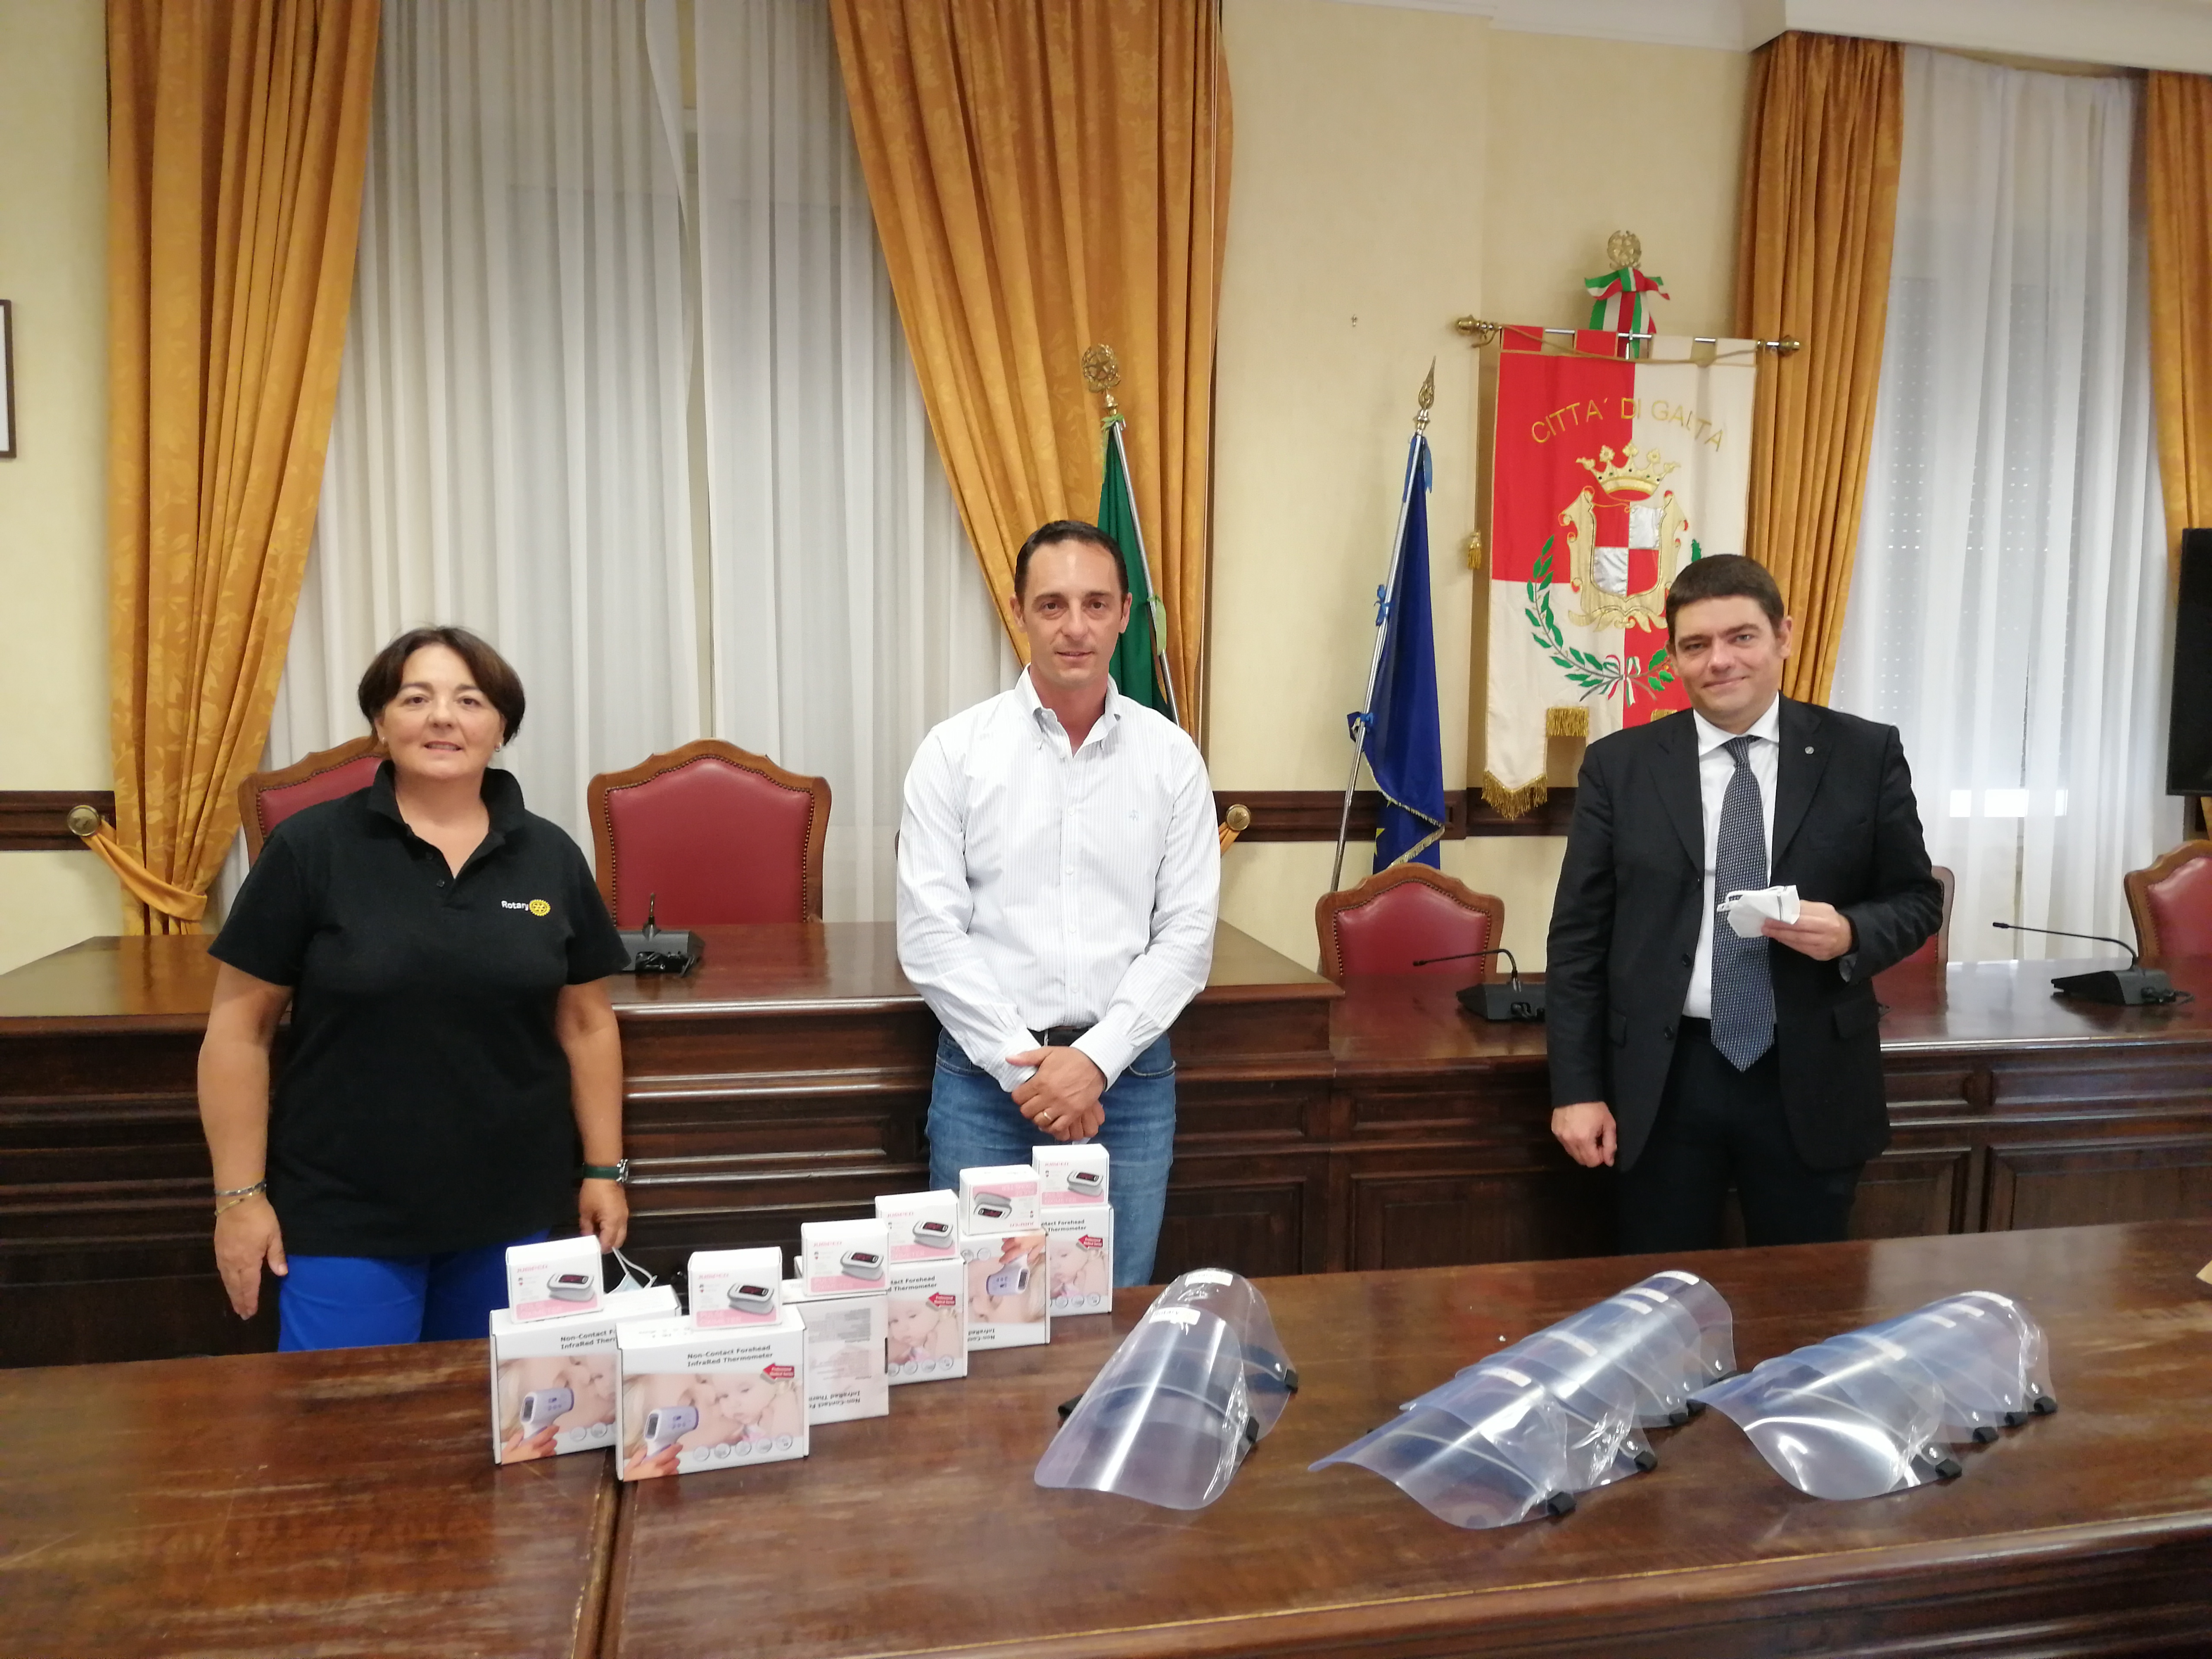 Il Club Rotary Formia-Gaeta dona dispositivi sanitari al Comune di Gaeta.